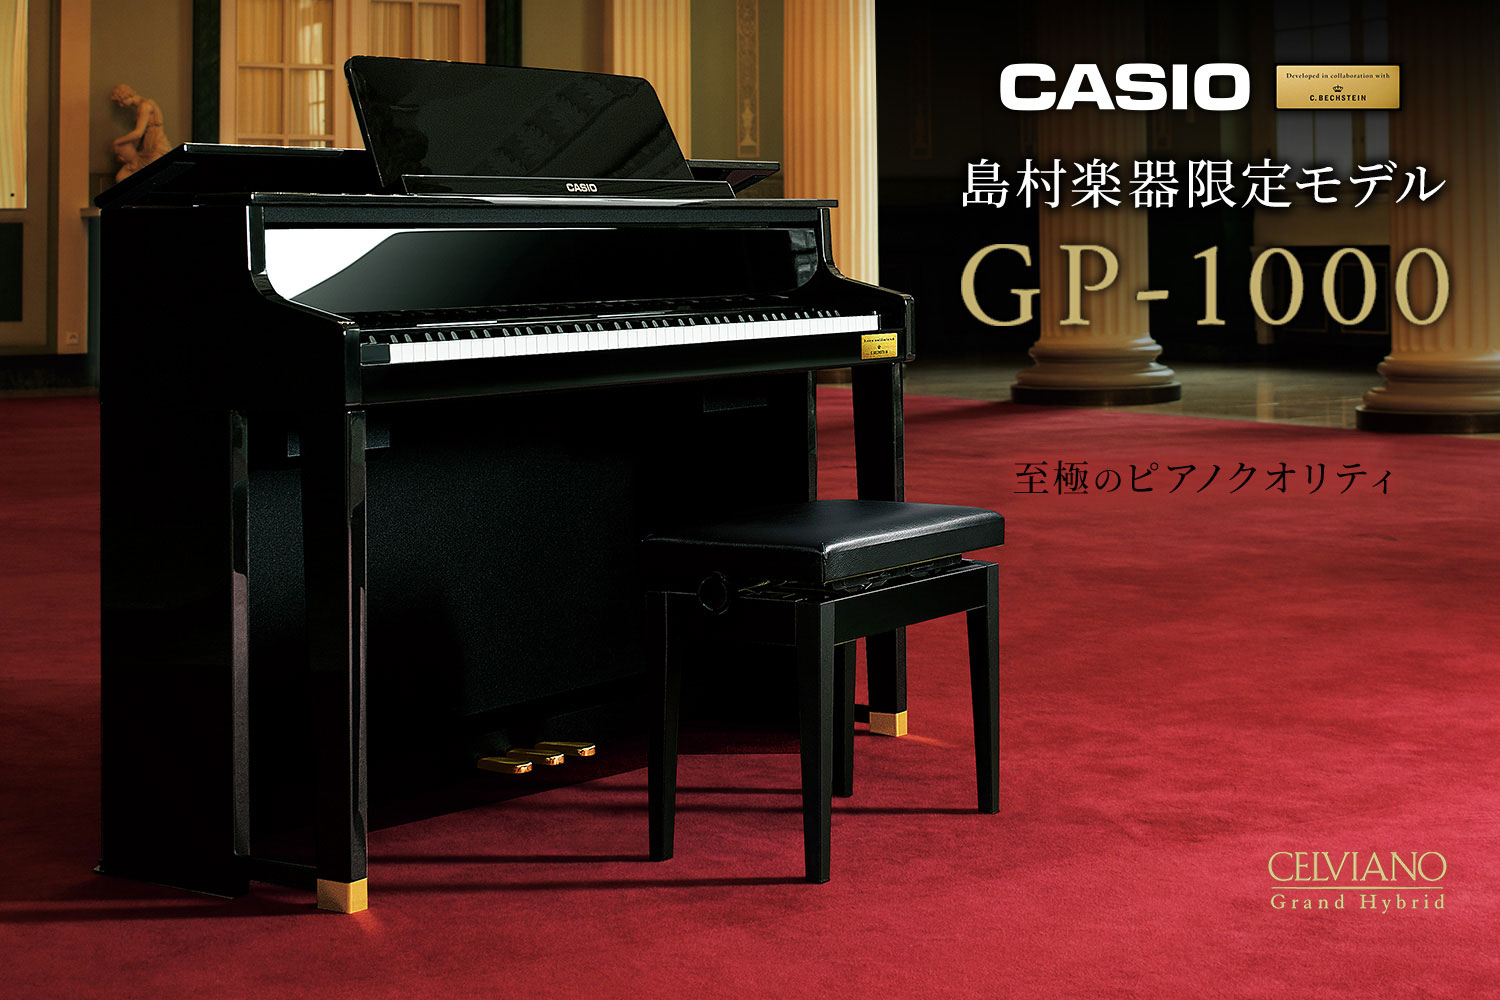 【島村楽器限定モデル】CASIO×C.ベヒシュタイン コラボレーション電子ピアノ「GP-1000」